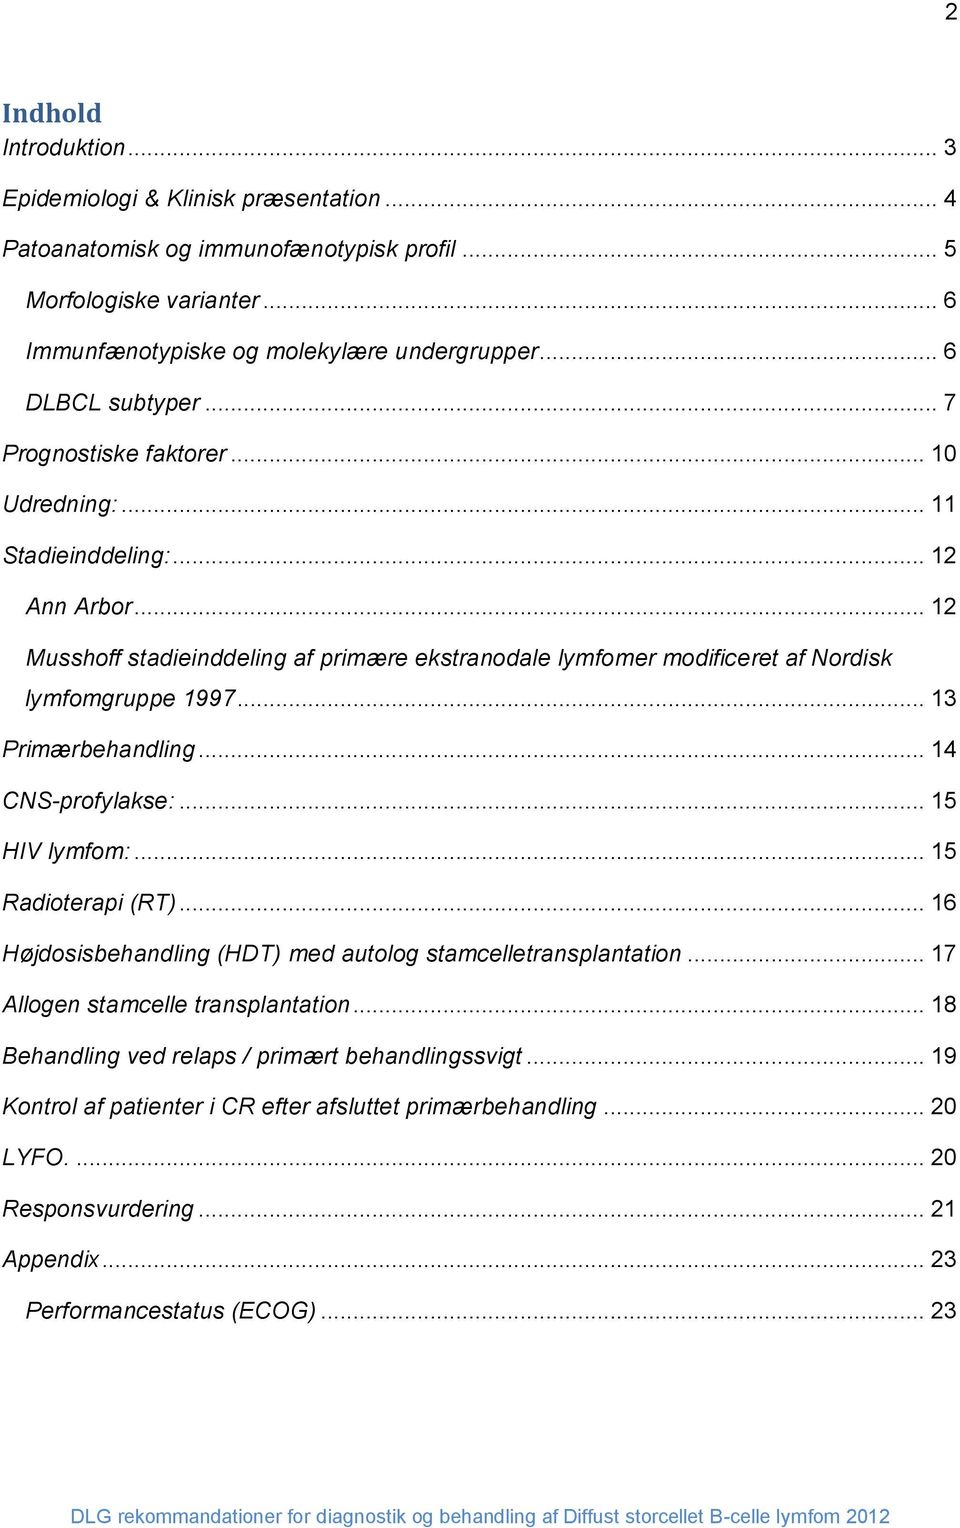 .. 12 Musshoff stadieinddeling af primære ekstranodale lymfomer modificeret af Nordisk lymfomgruppe 1997... 13 Primærbehandling... 14 CNS-profylakse:... 15 HIV lymfom:... 15 Radioterapi (RT).